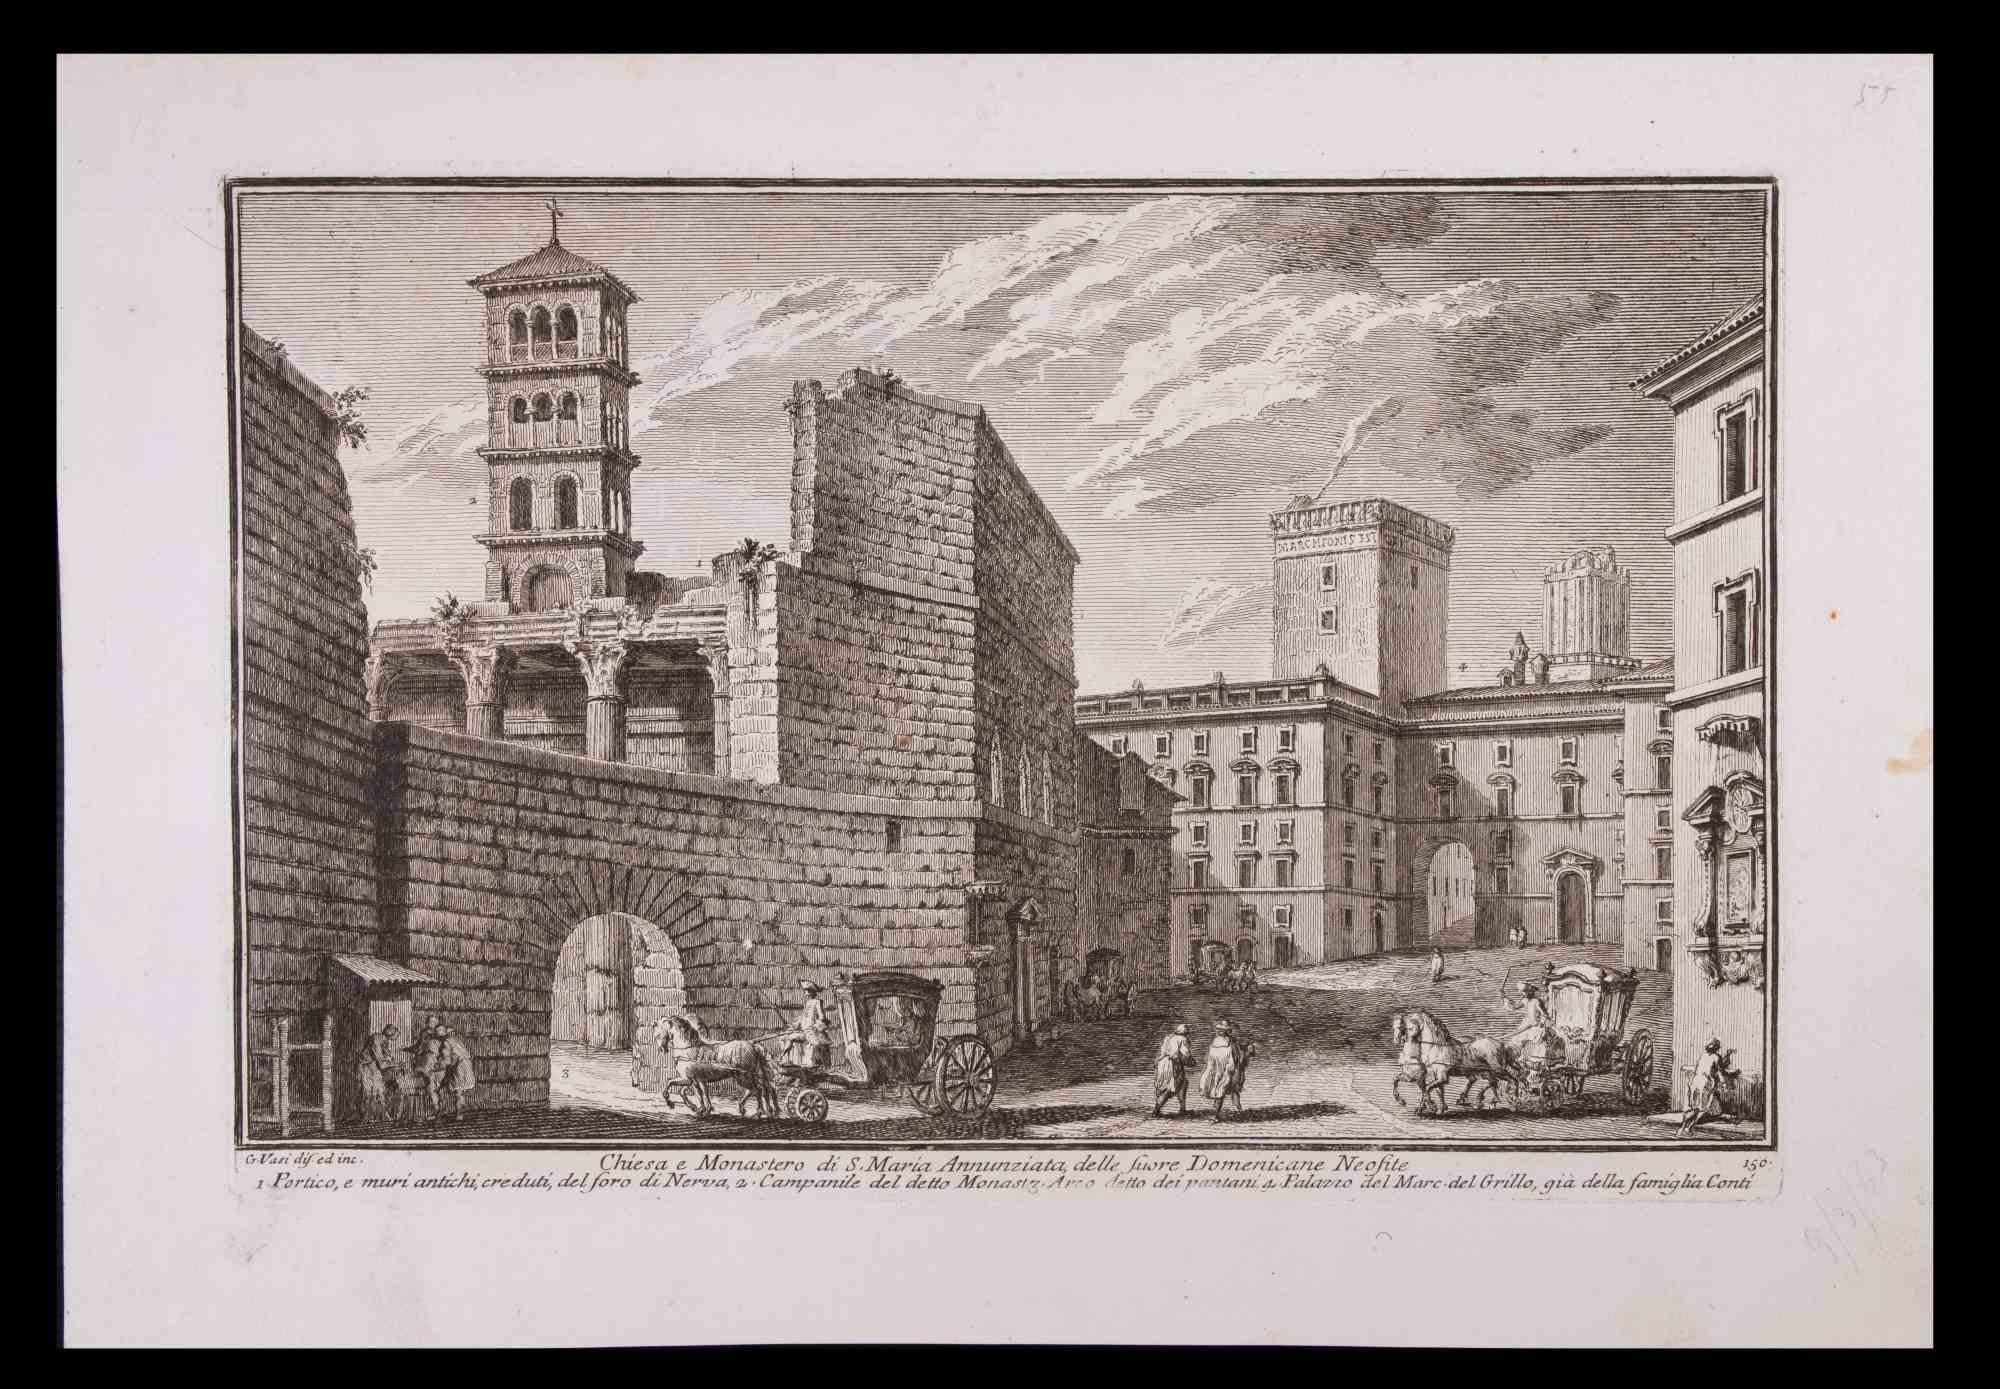 Giuseppe Vasi Figurative Print – Chiesa e Monastero di S. Maria Annunziata – Radierung von G.Vasi – spätes 18. Jahrhundert